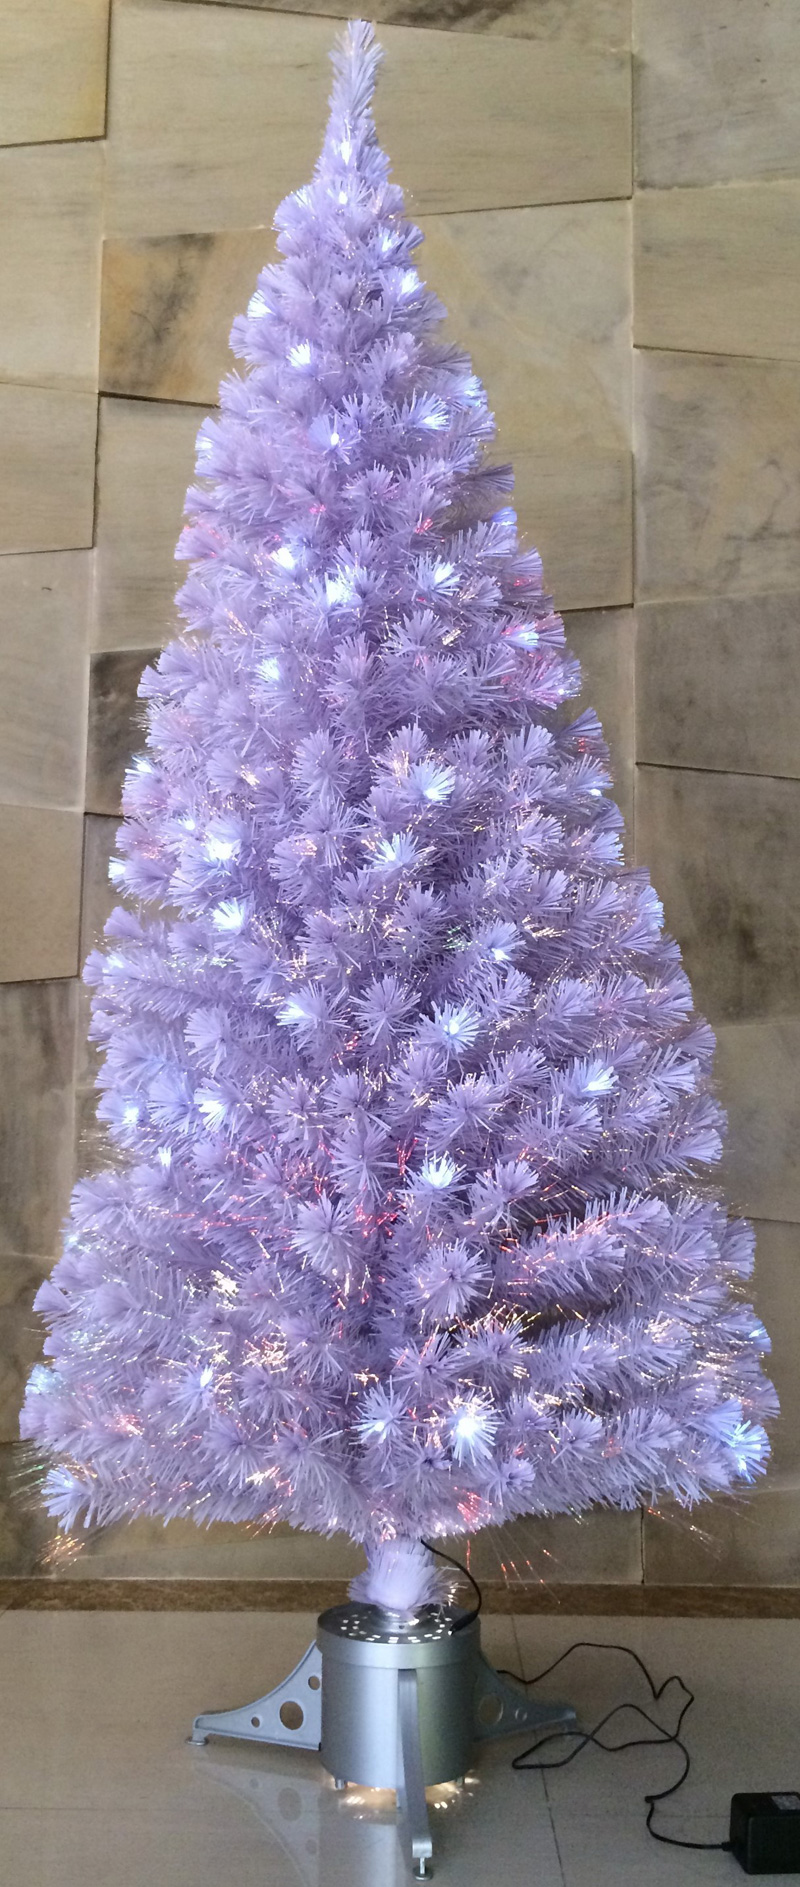 Hayneedle lighted Christmas tree (white)